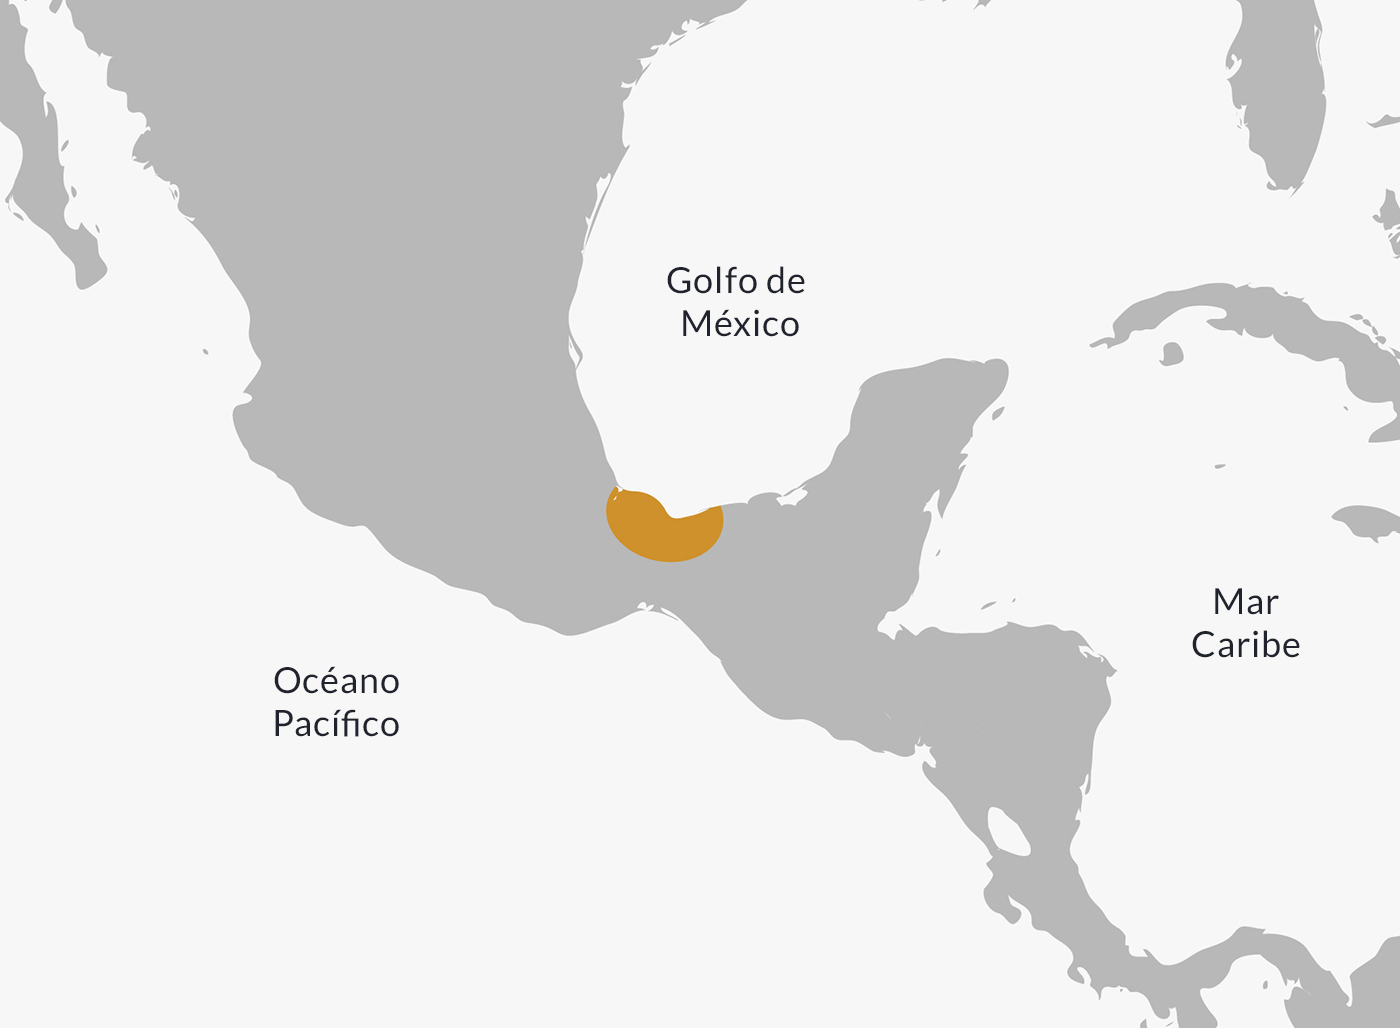 Mapa de la ubicación de la civilización olmeca.